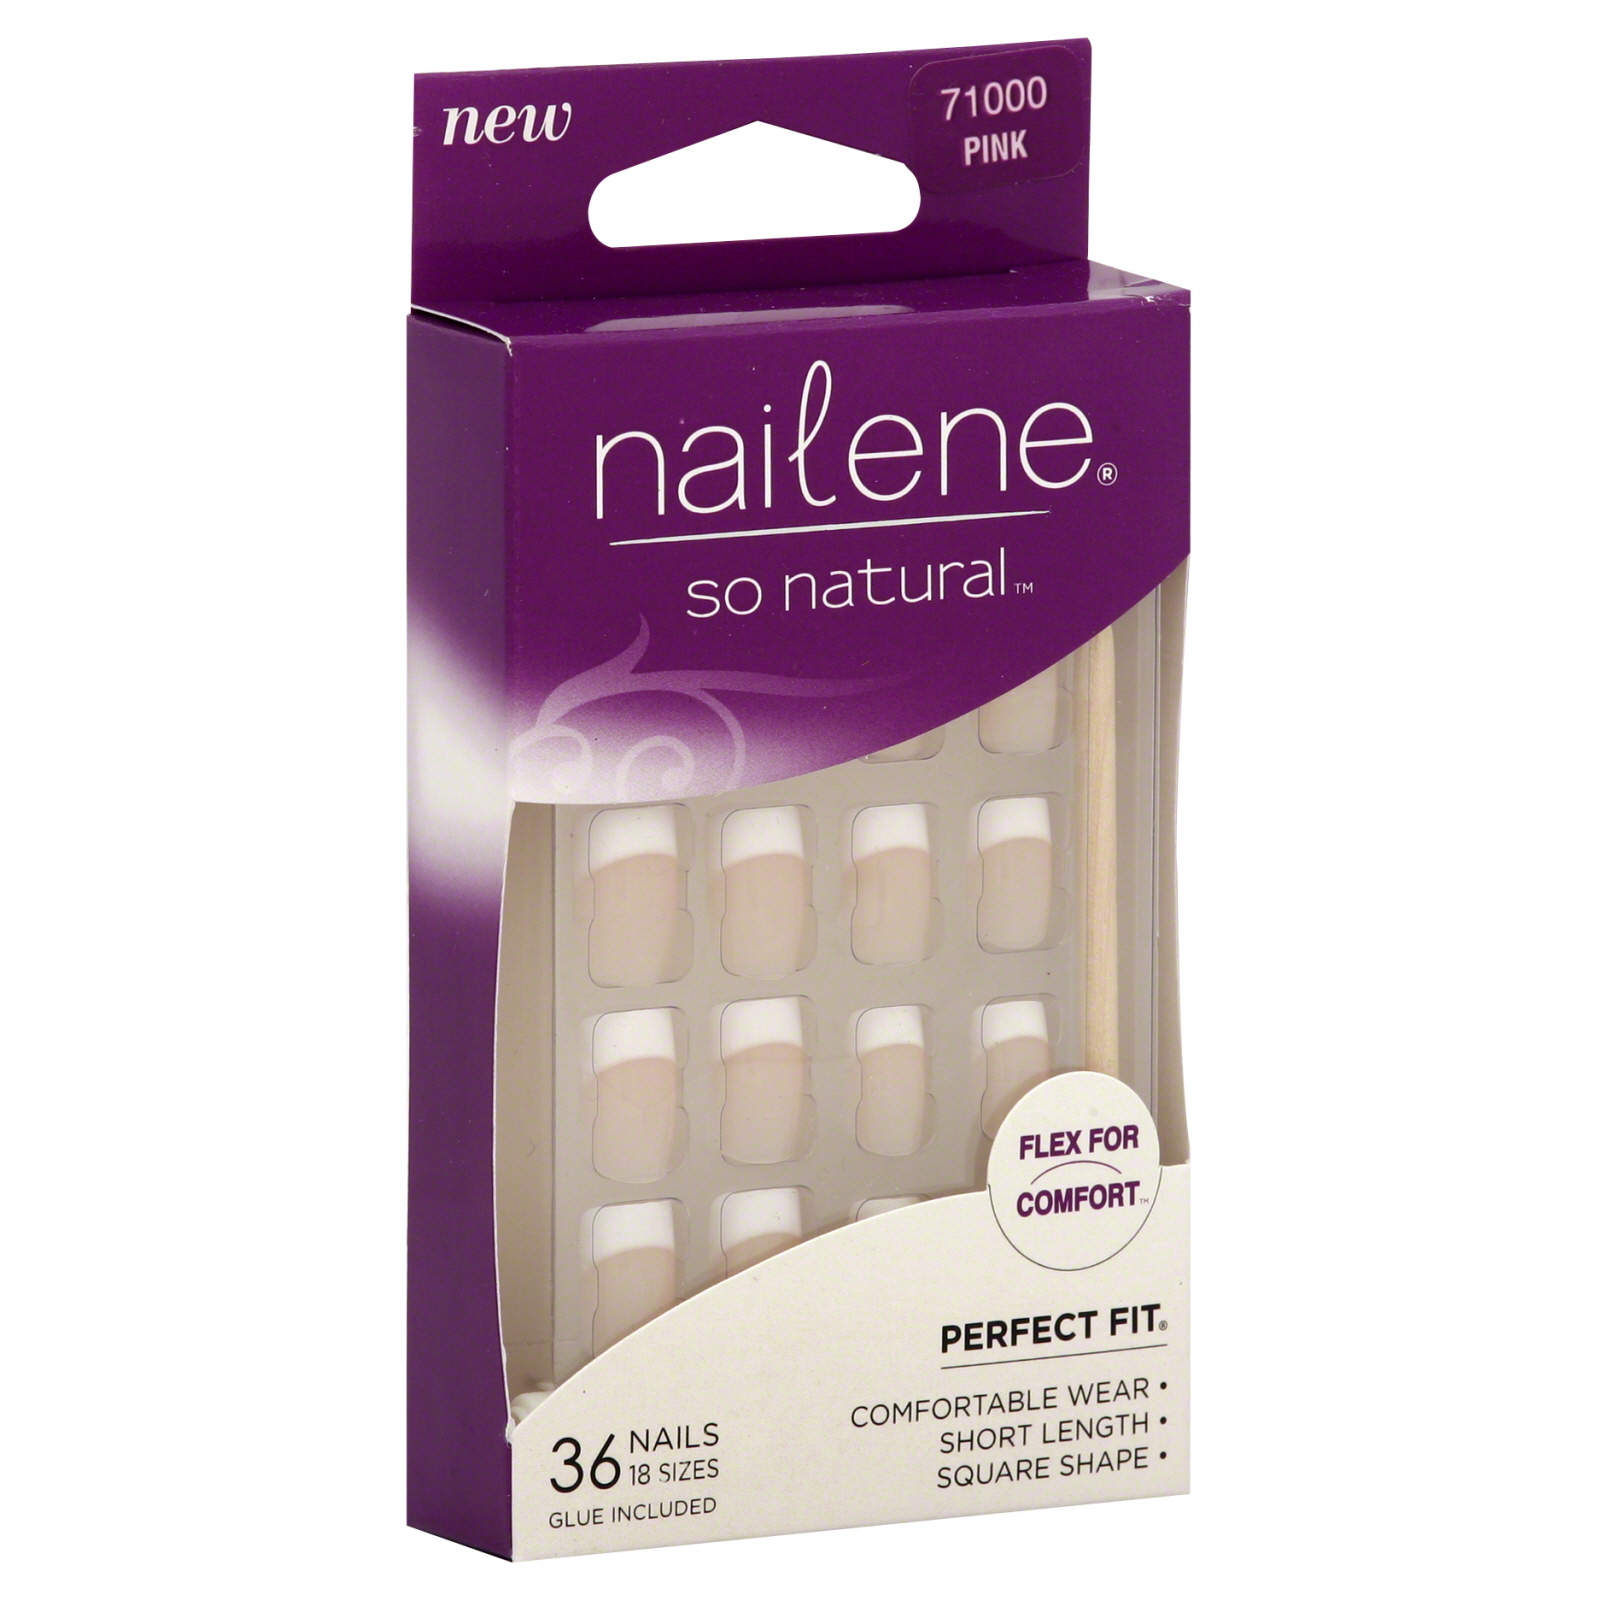 Nailene So Natural Nails, Pink, 36 nails